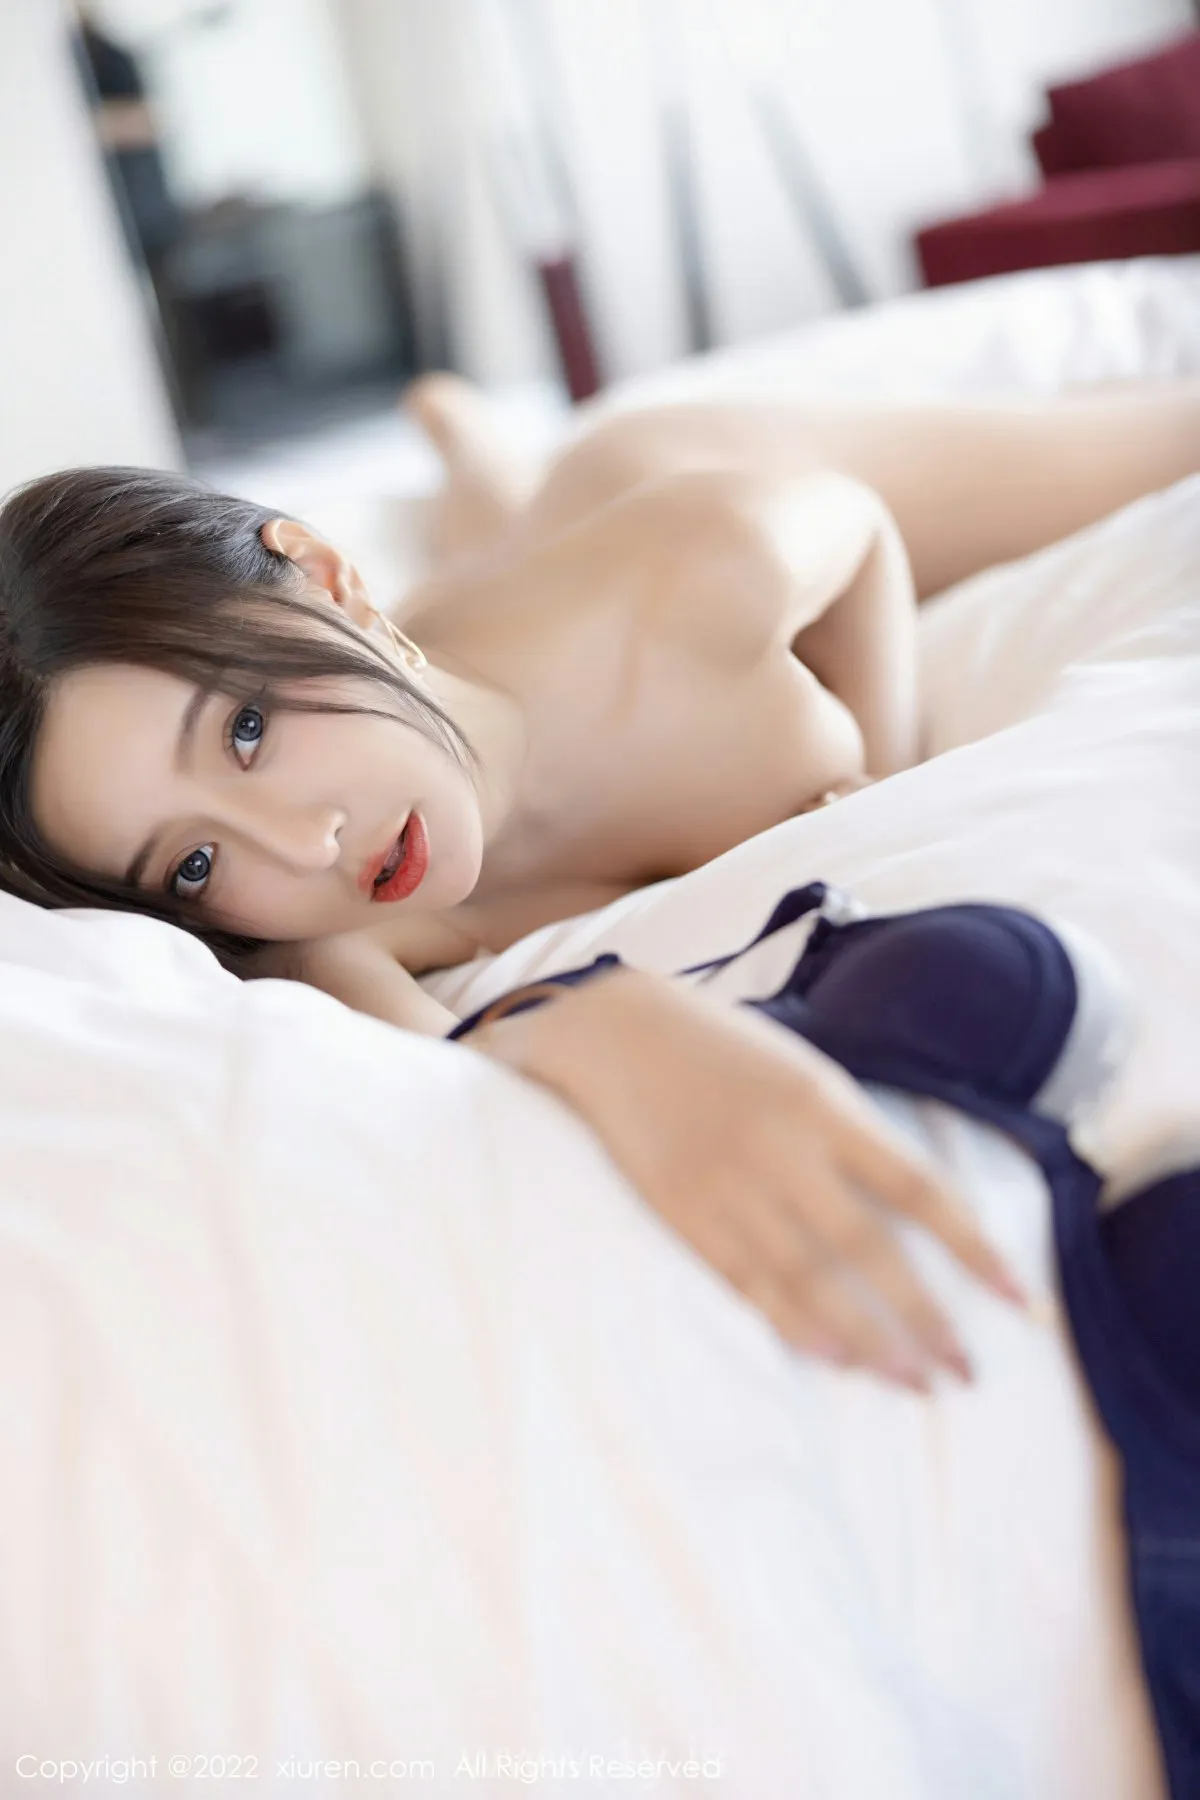 XIUREN(秀人网) No.5978 Pretty Asian Model 王馨瑶yanni